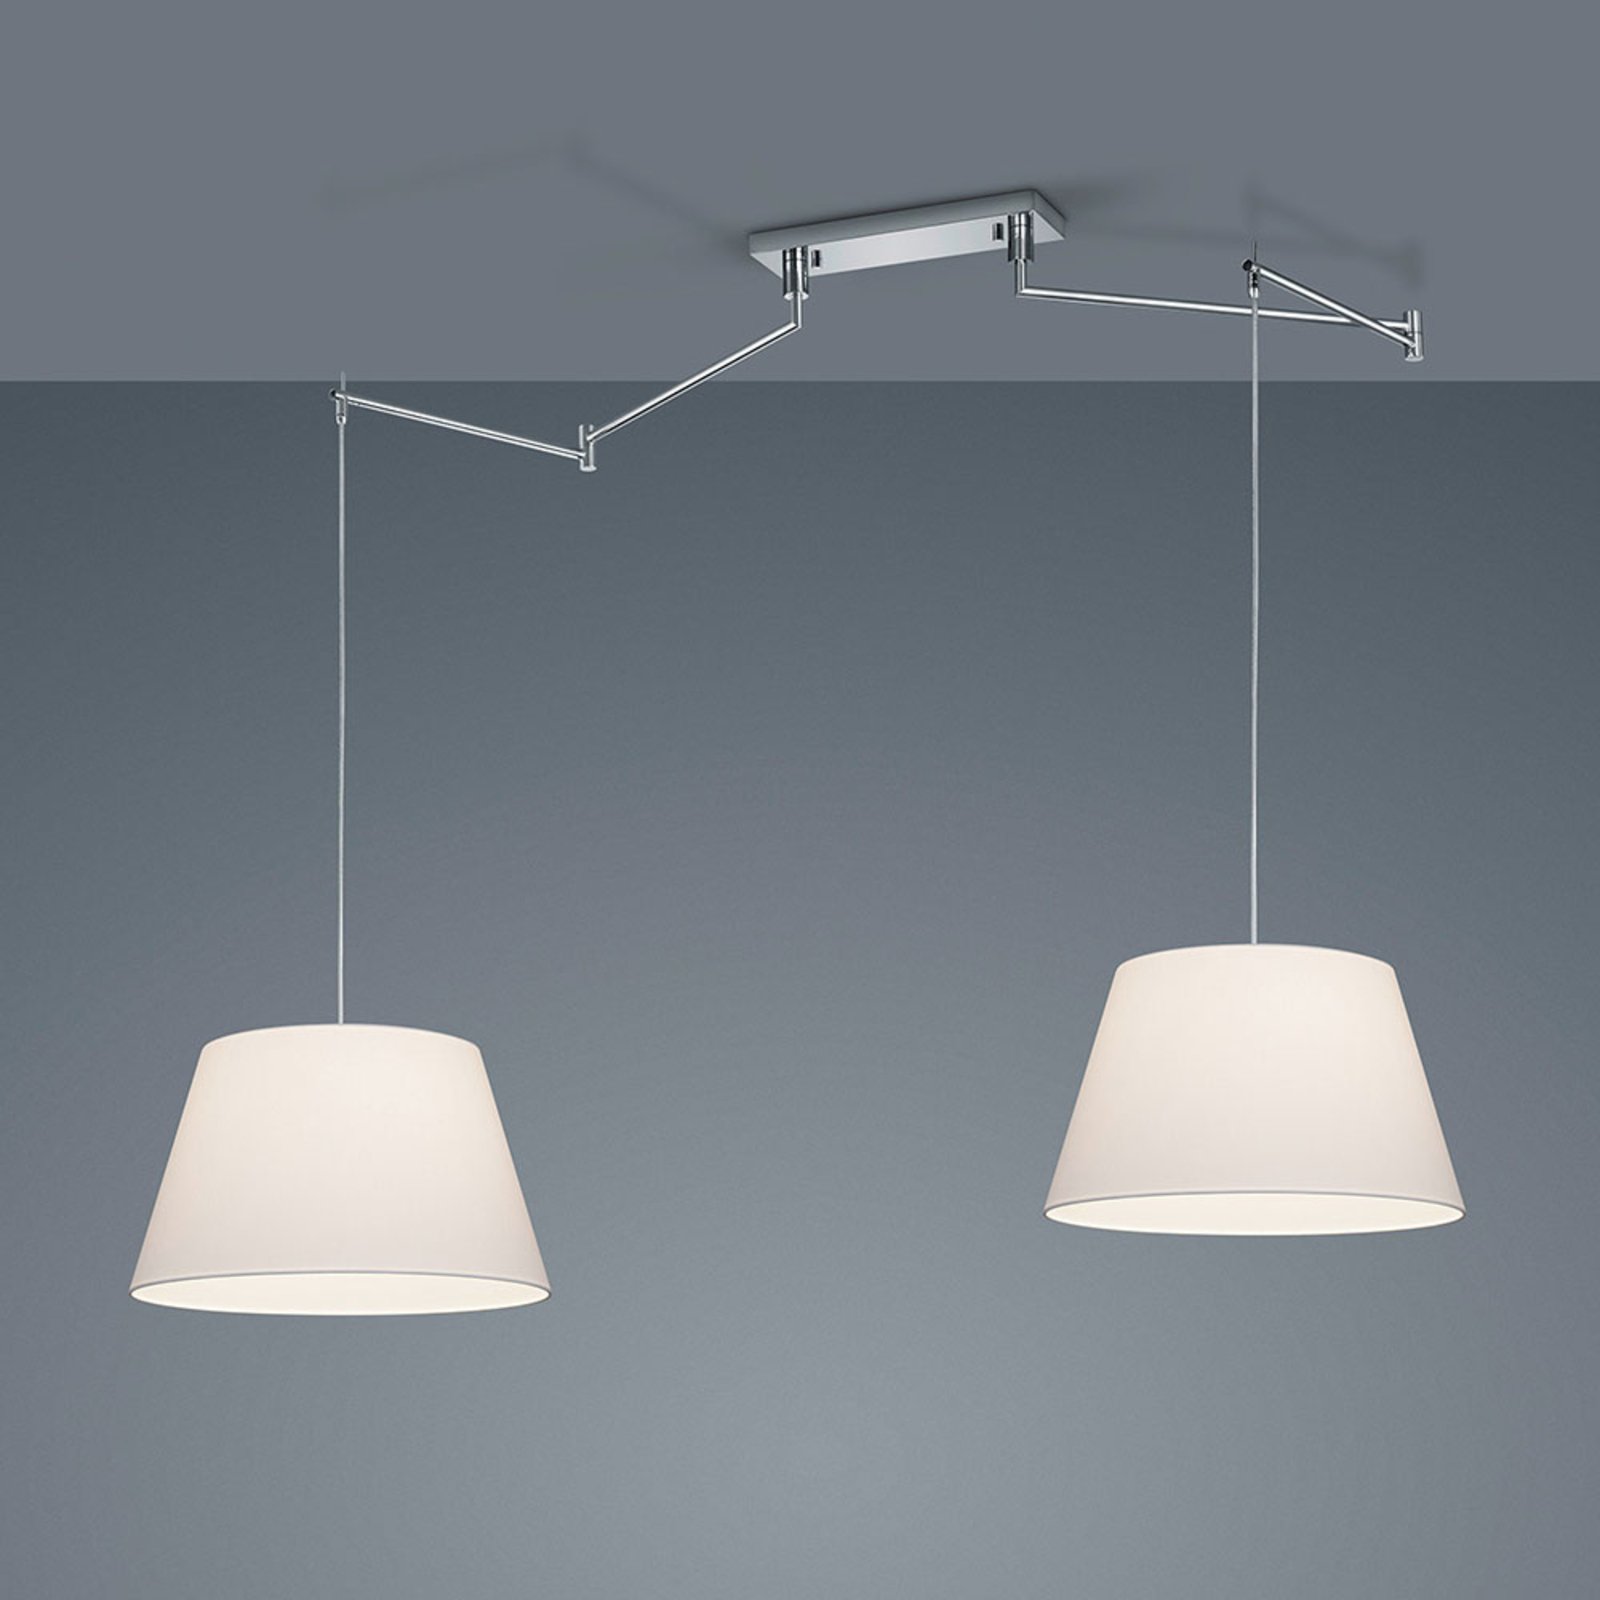 Helestra Certo hanglamp conisch 2-lamps, wit